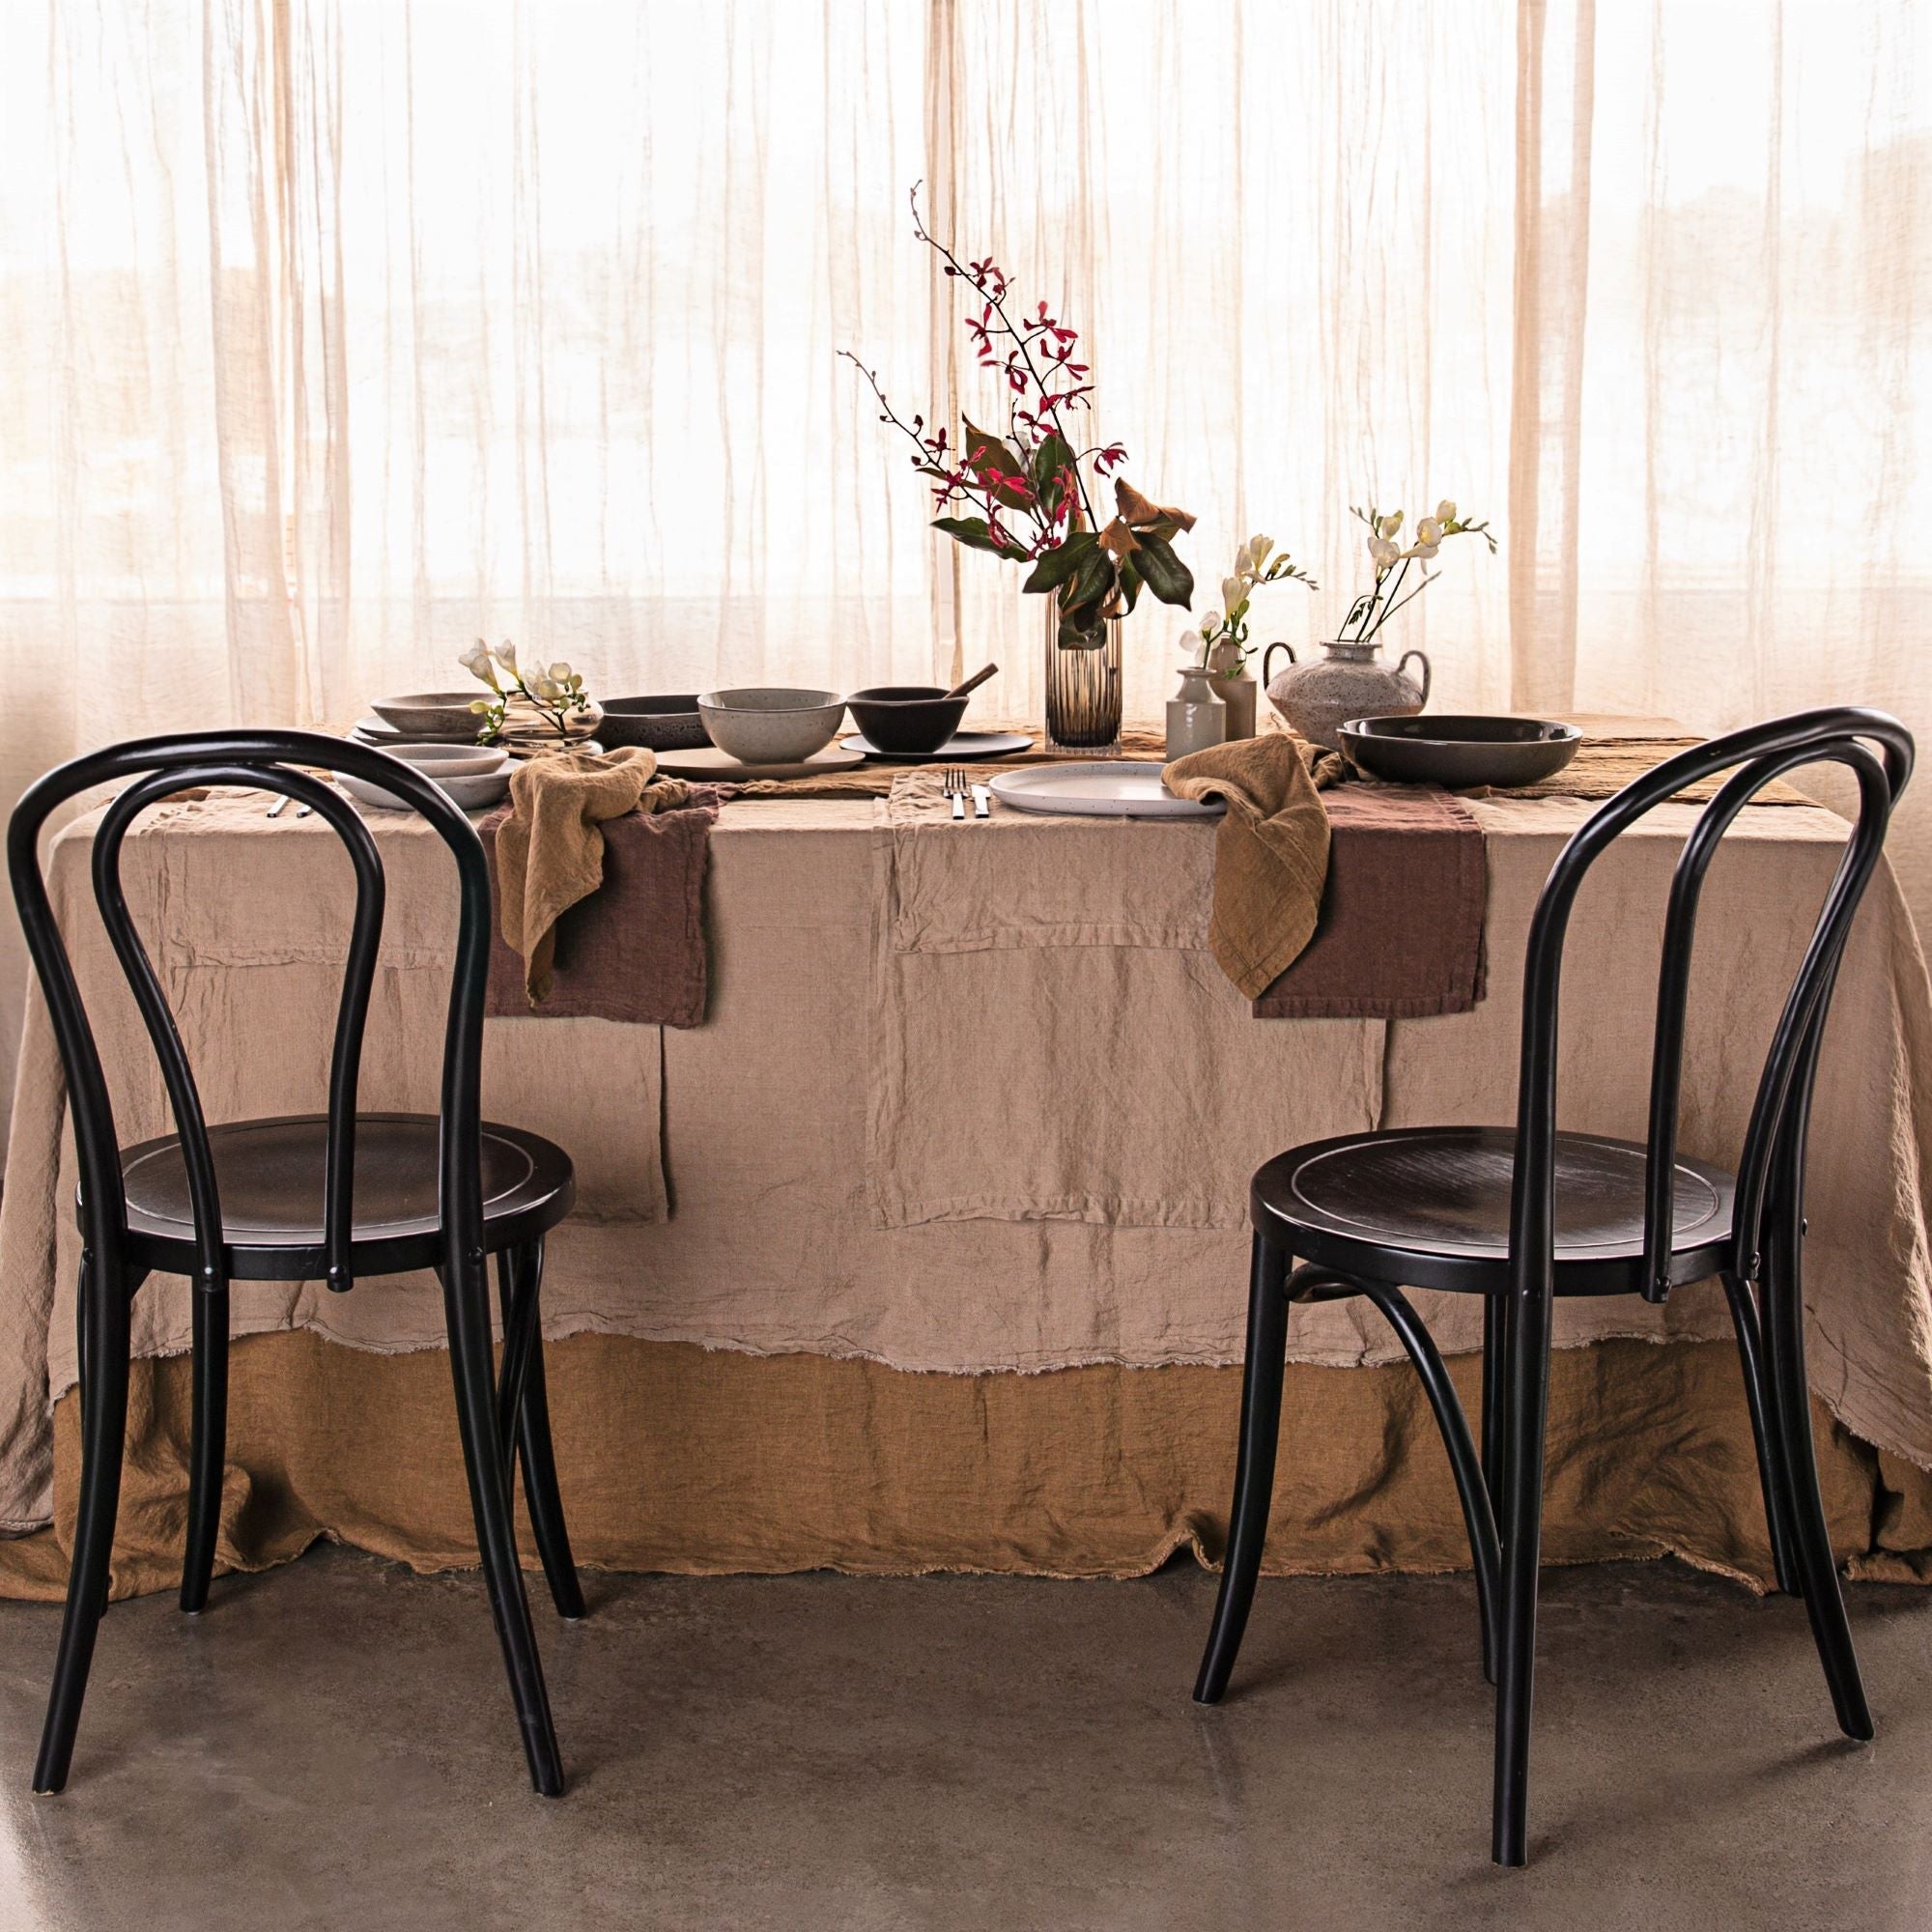 Linen Tablecloth | Caramel Tone  | Hale Mercantile Co.